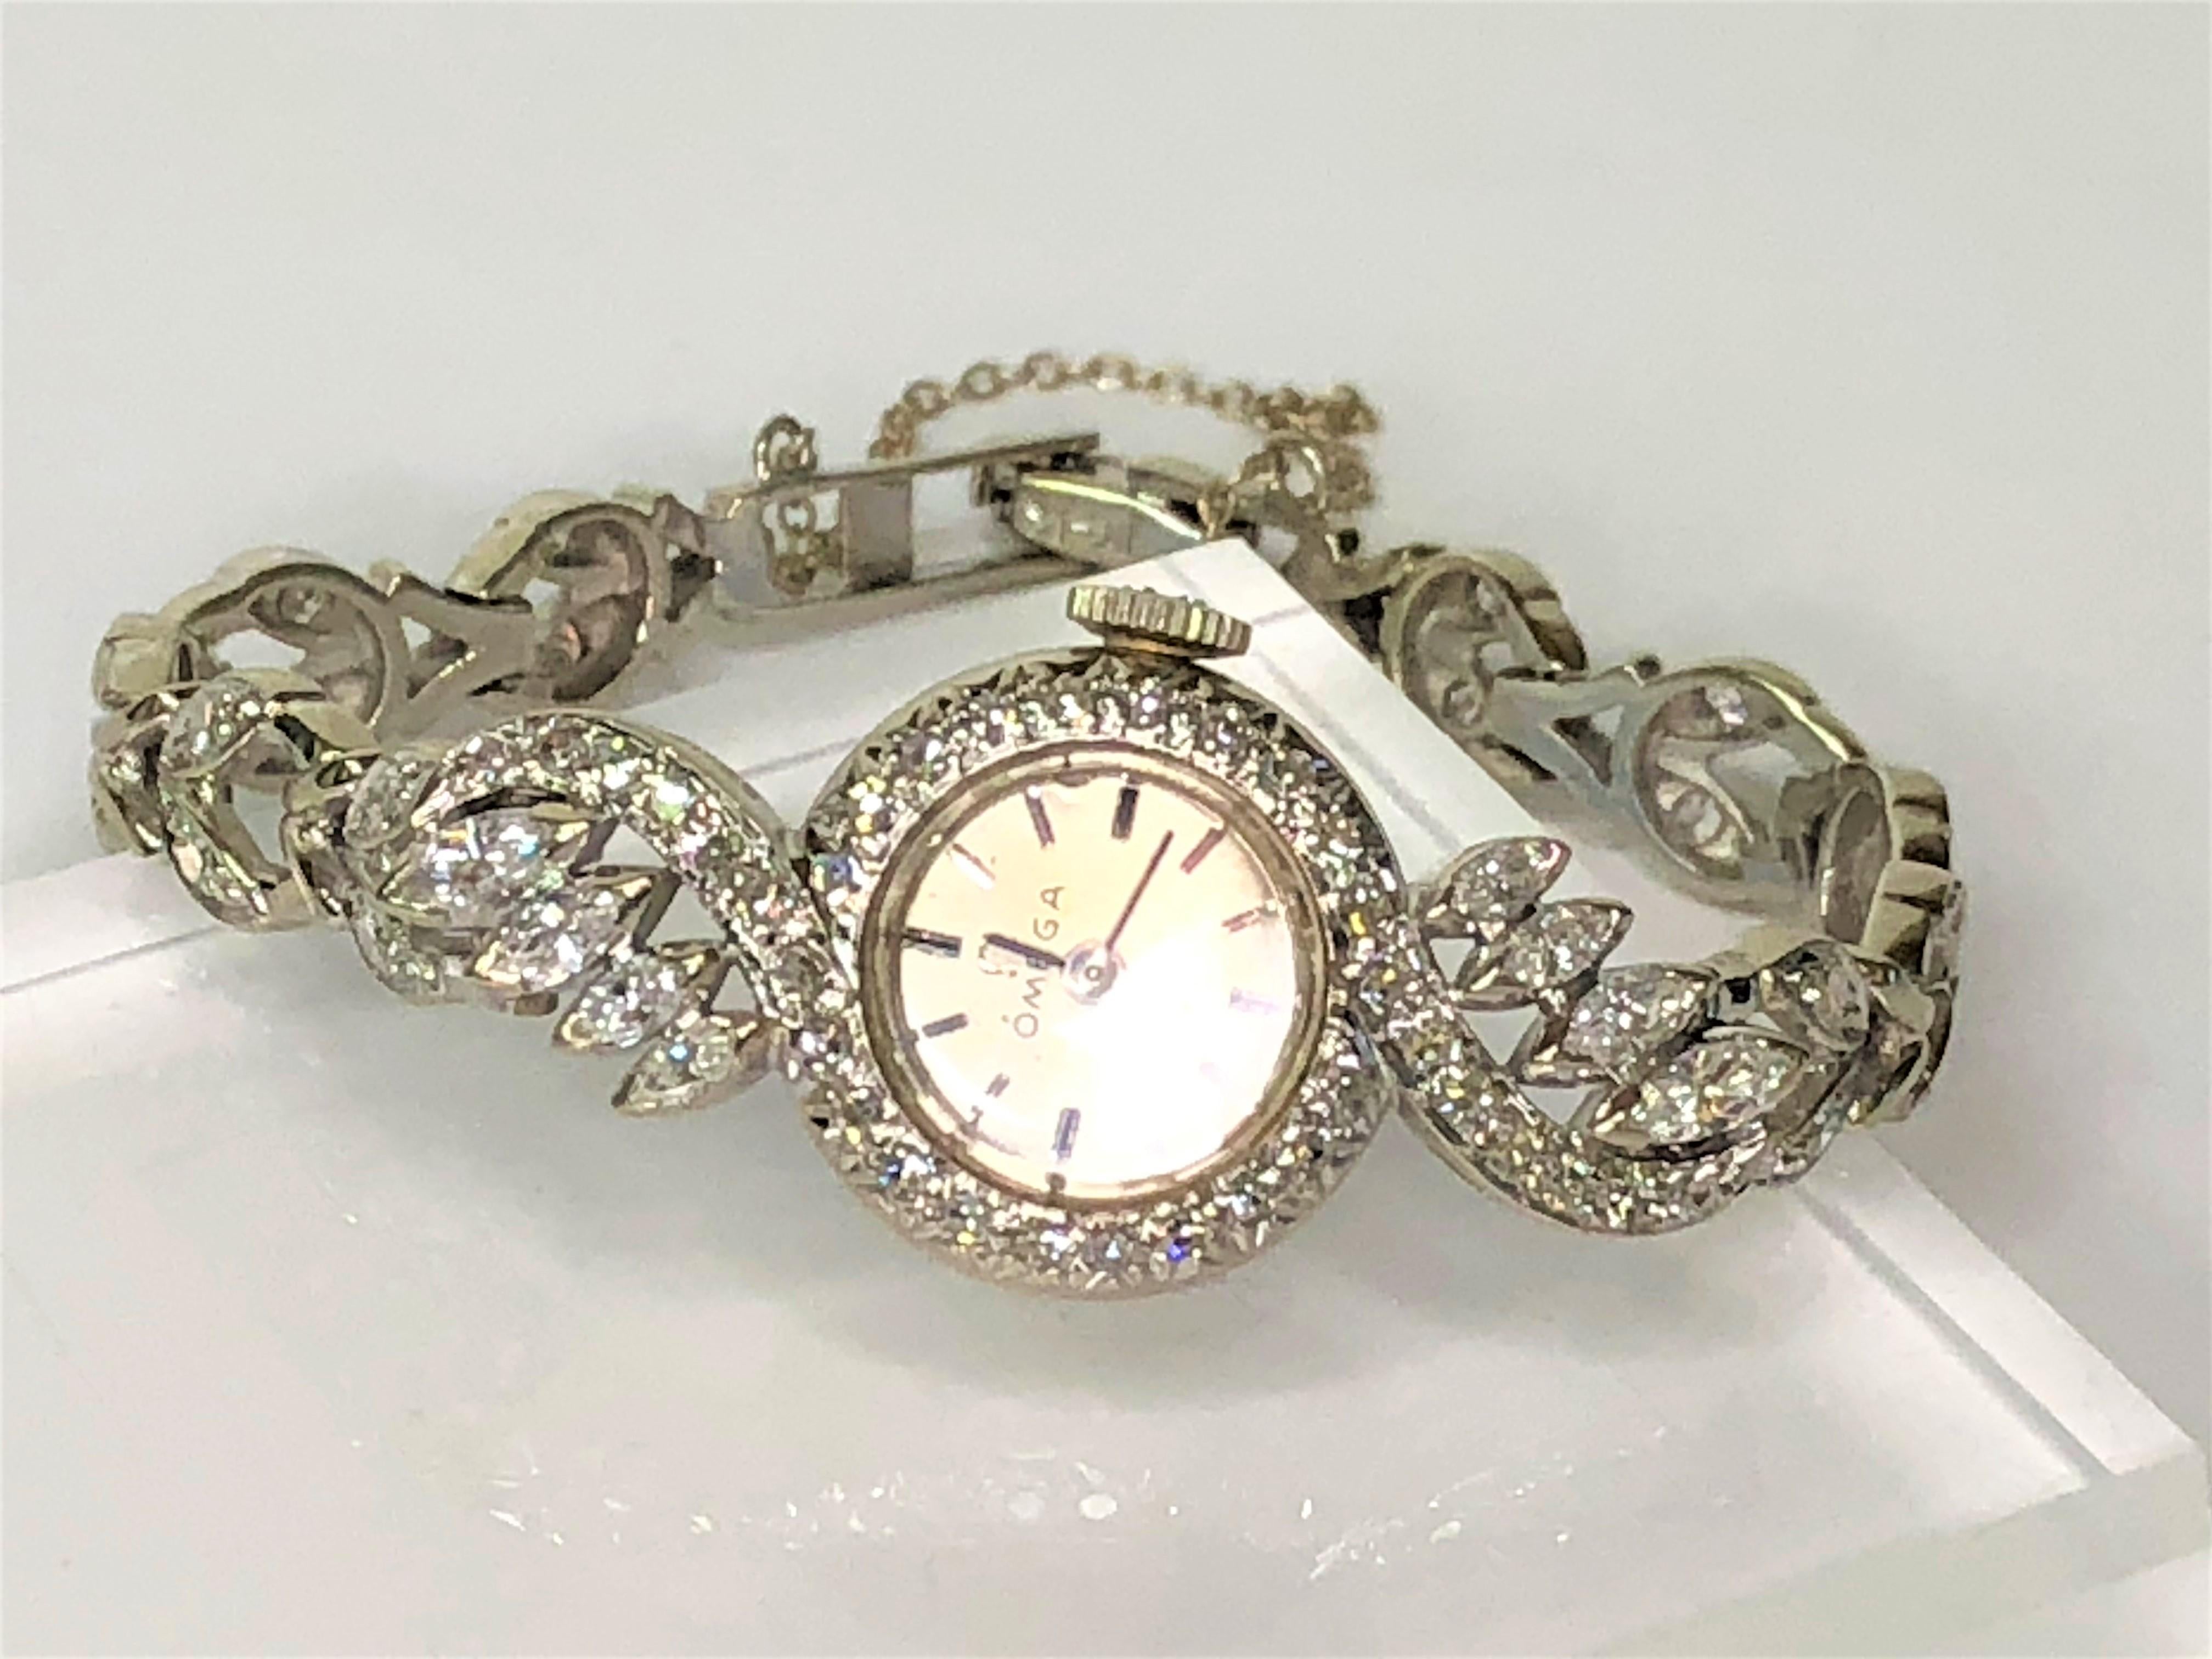 Cette montre Omega complexe brille de tous ses feux.  Un design magnifique et unique fait de cette montre un must !
Or blanc 14 carats
Poids total des diamants : environ 1,20
34 diamants ronds de taille unique, environ .34tdw, et 8 diamants